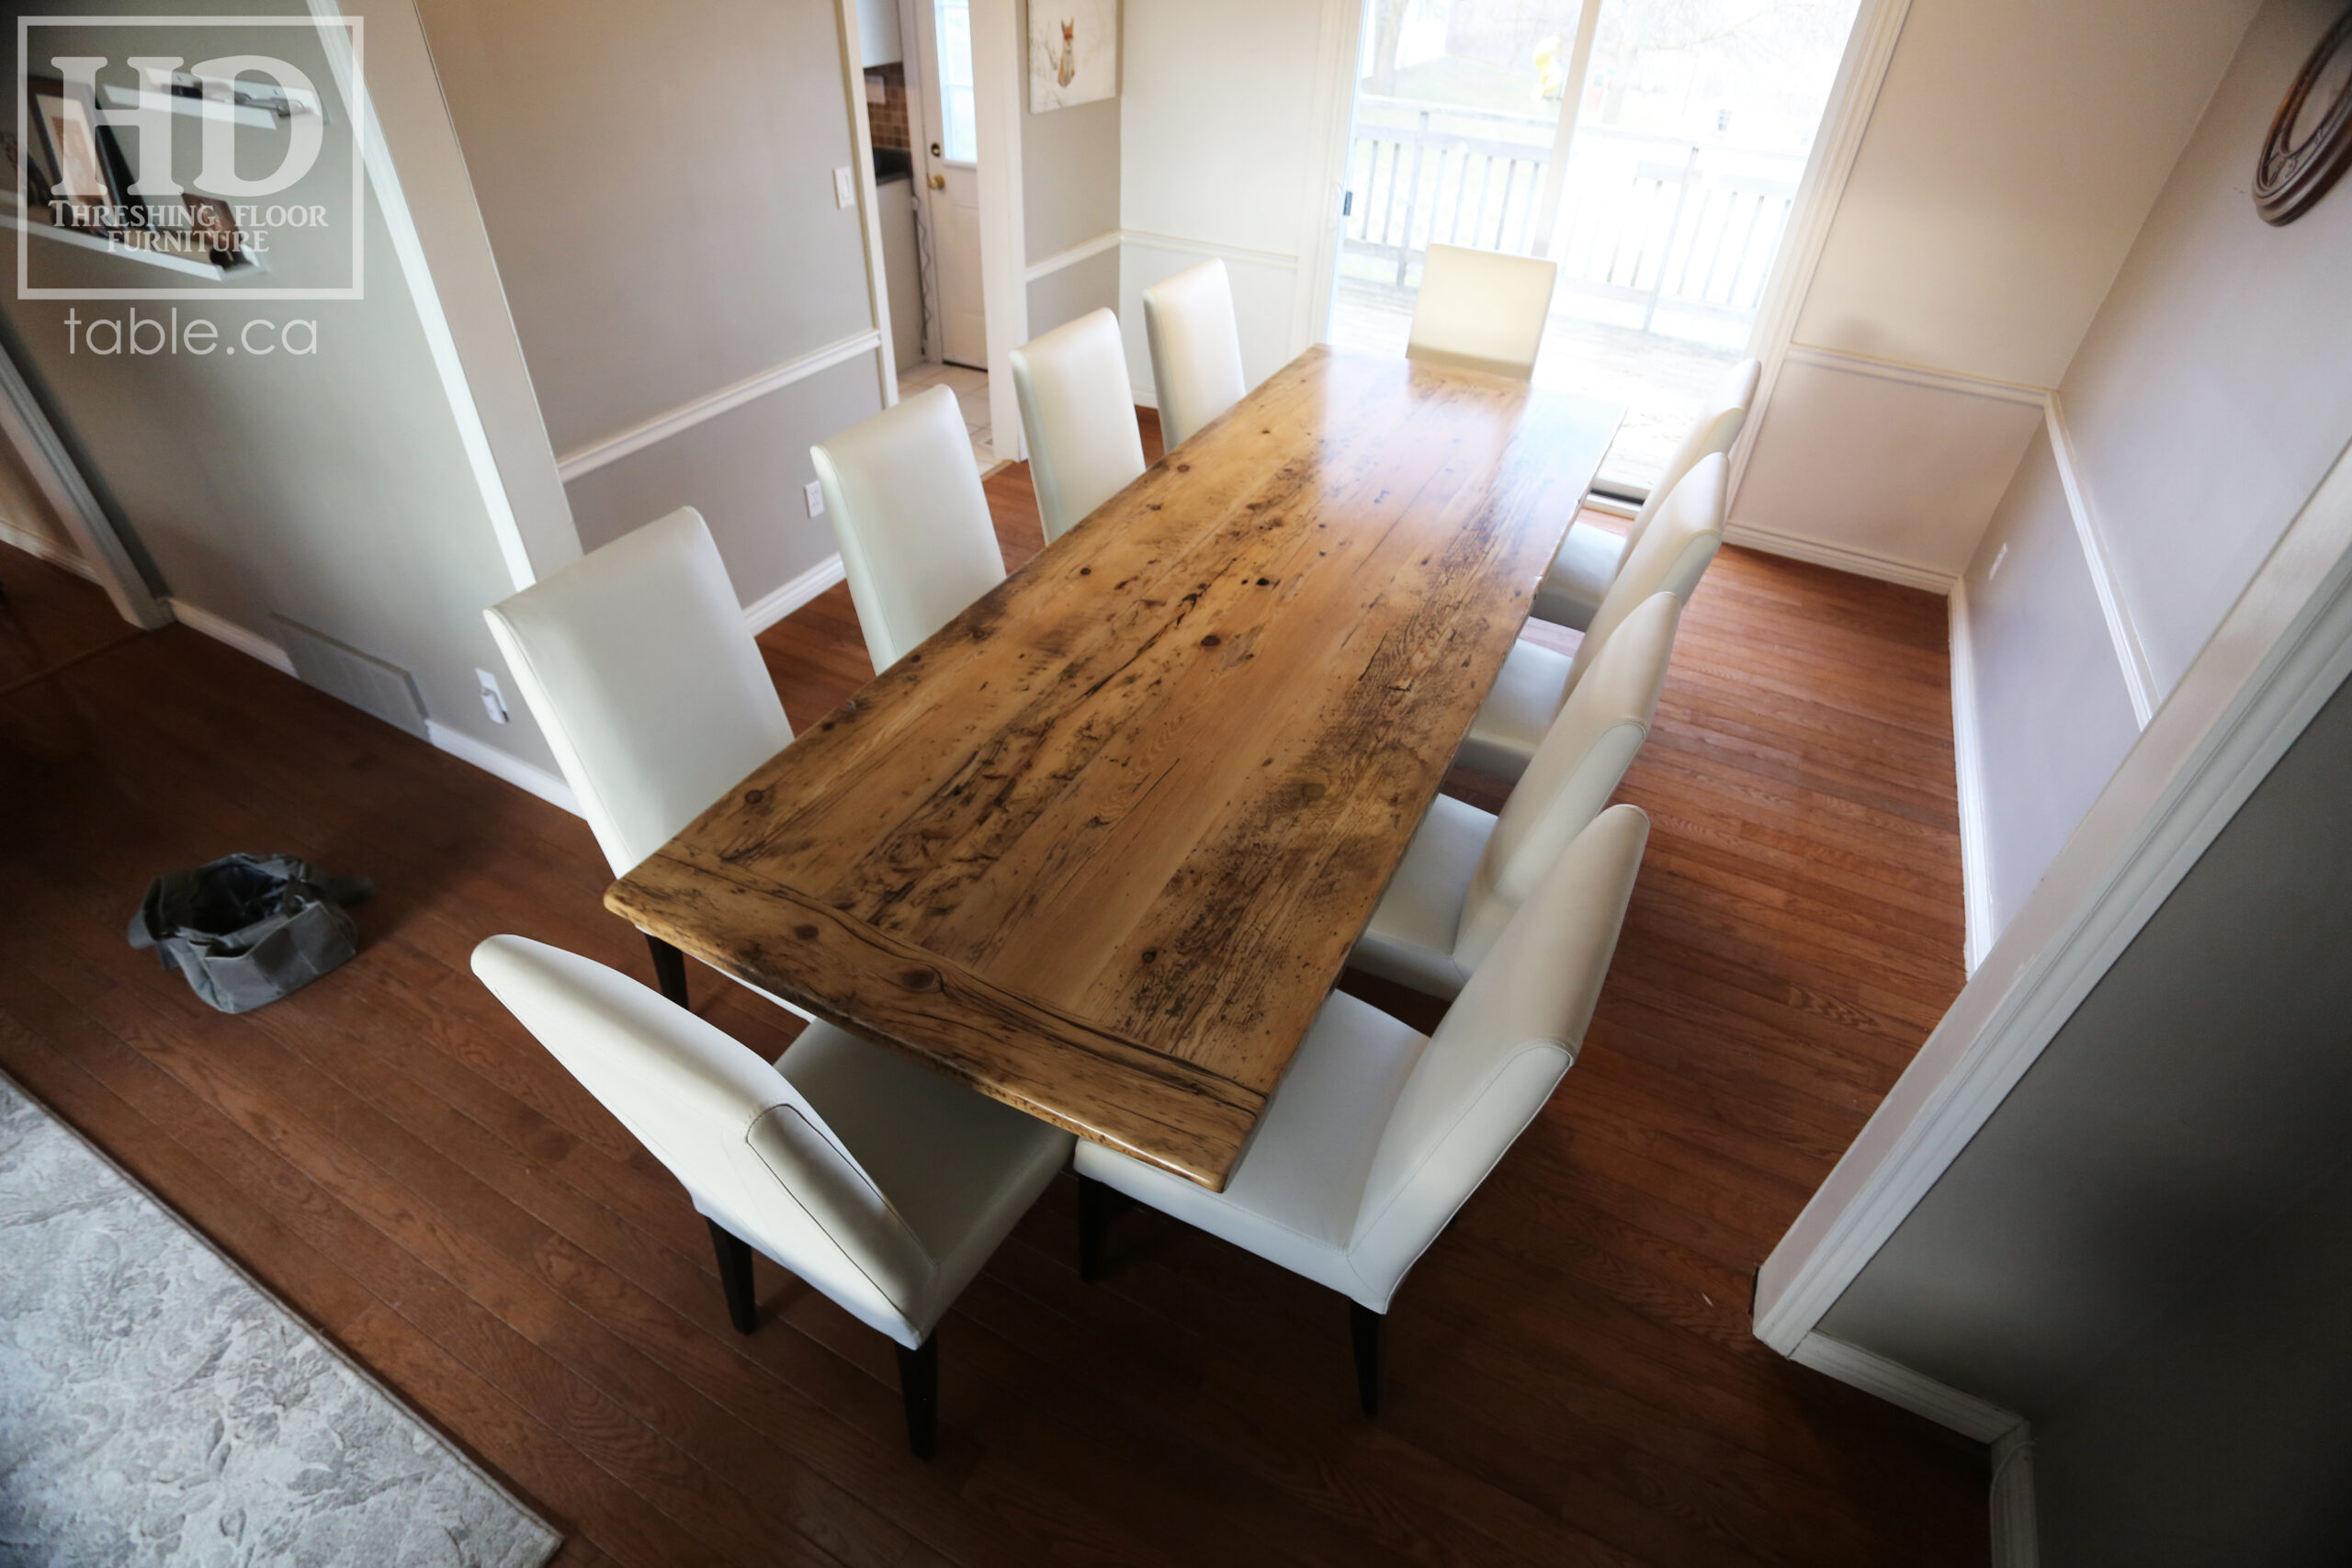 Ontario Pioneer Barnwood Table by HD Threshing Floor Furniture / www.table.ca